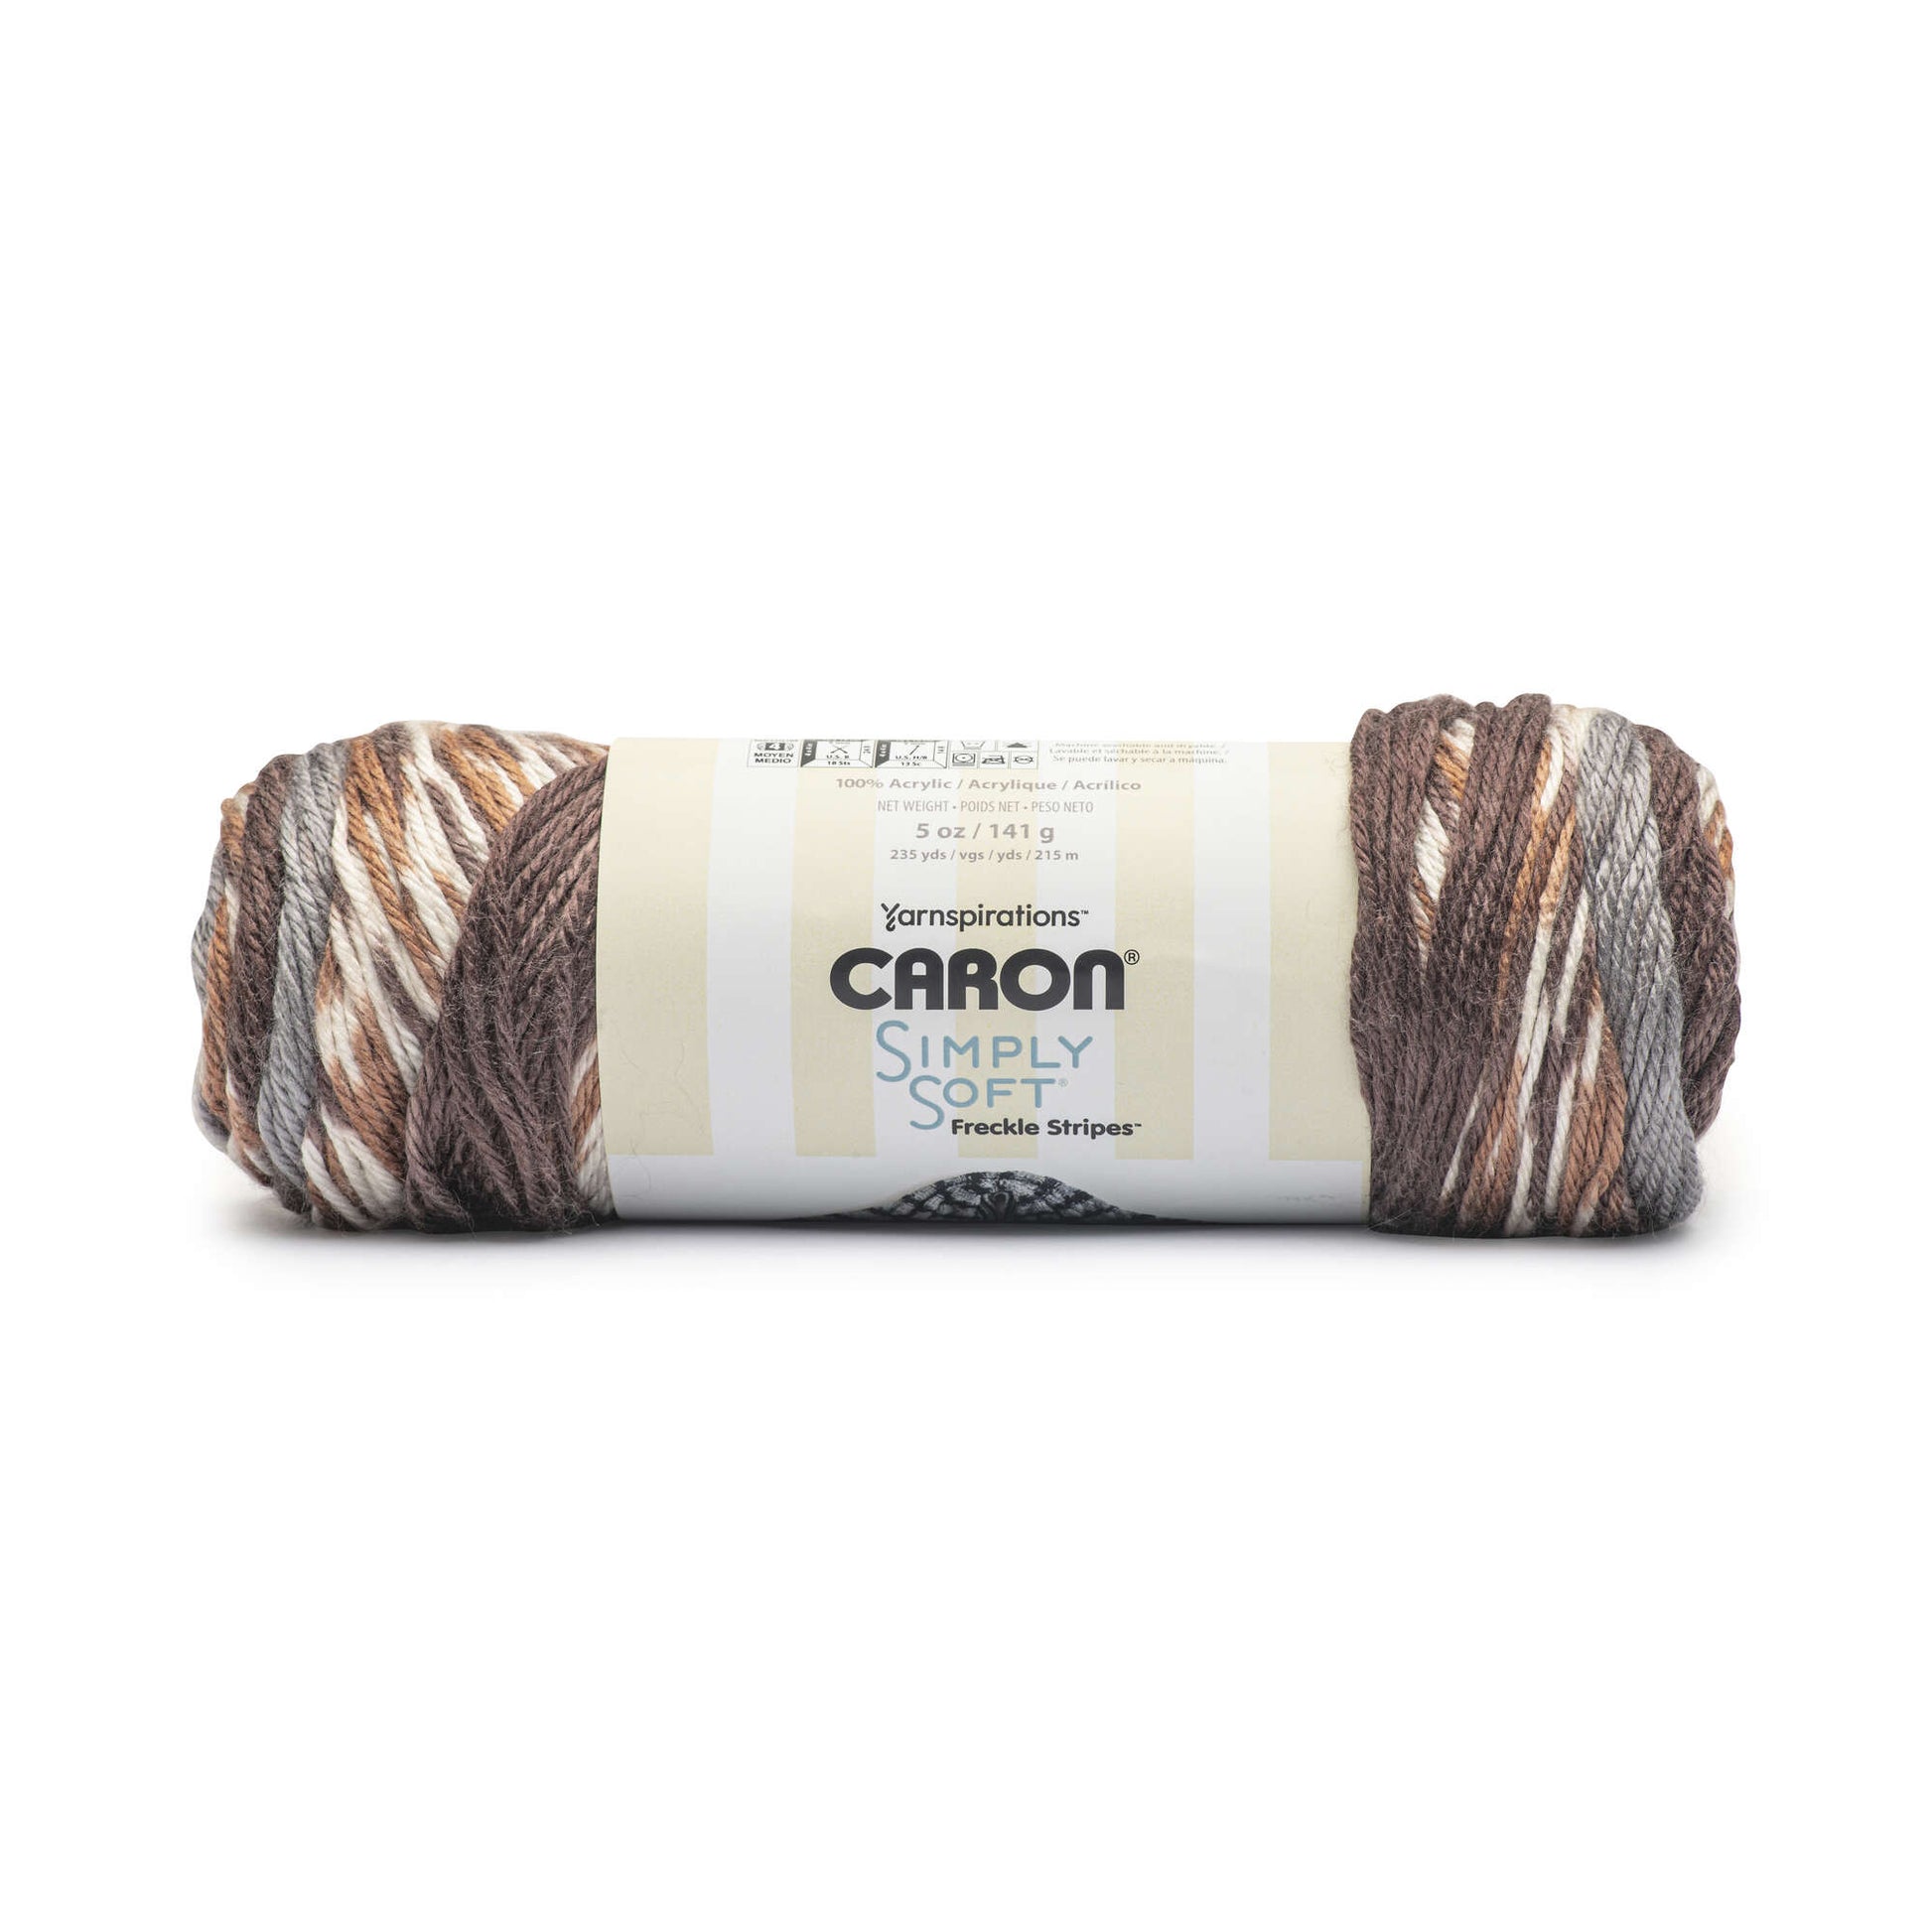 Caron Simply Soft Freckle Stripes Yarn